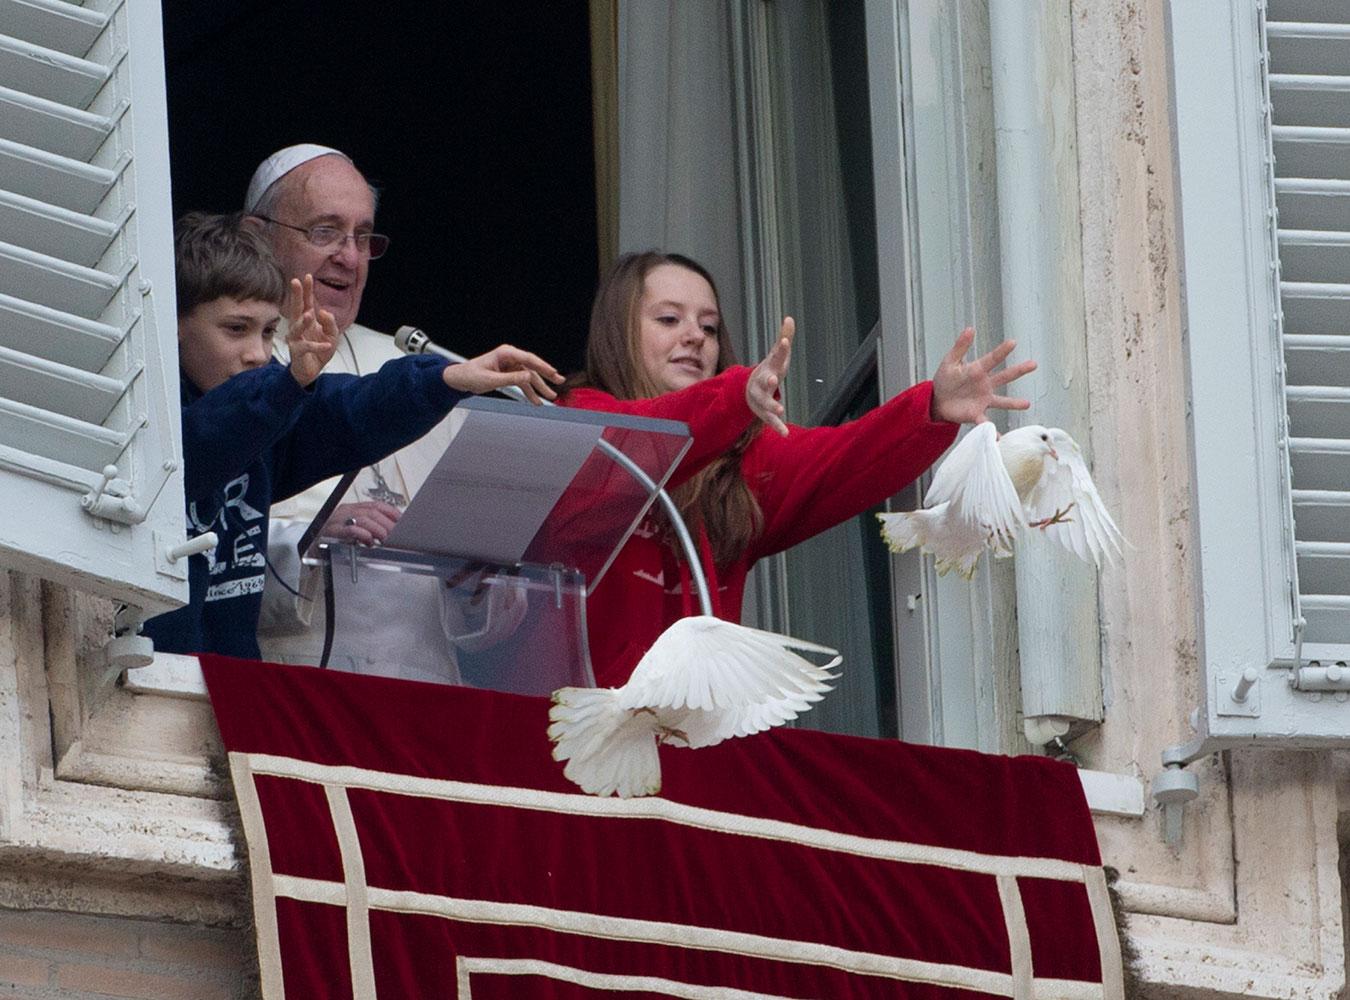 Påven och två barn släppte ut duvorna som ett budskap för fred.